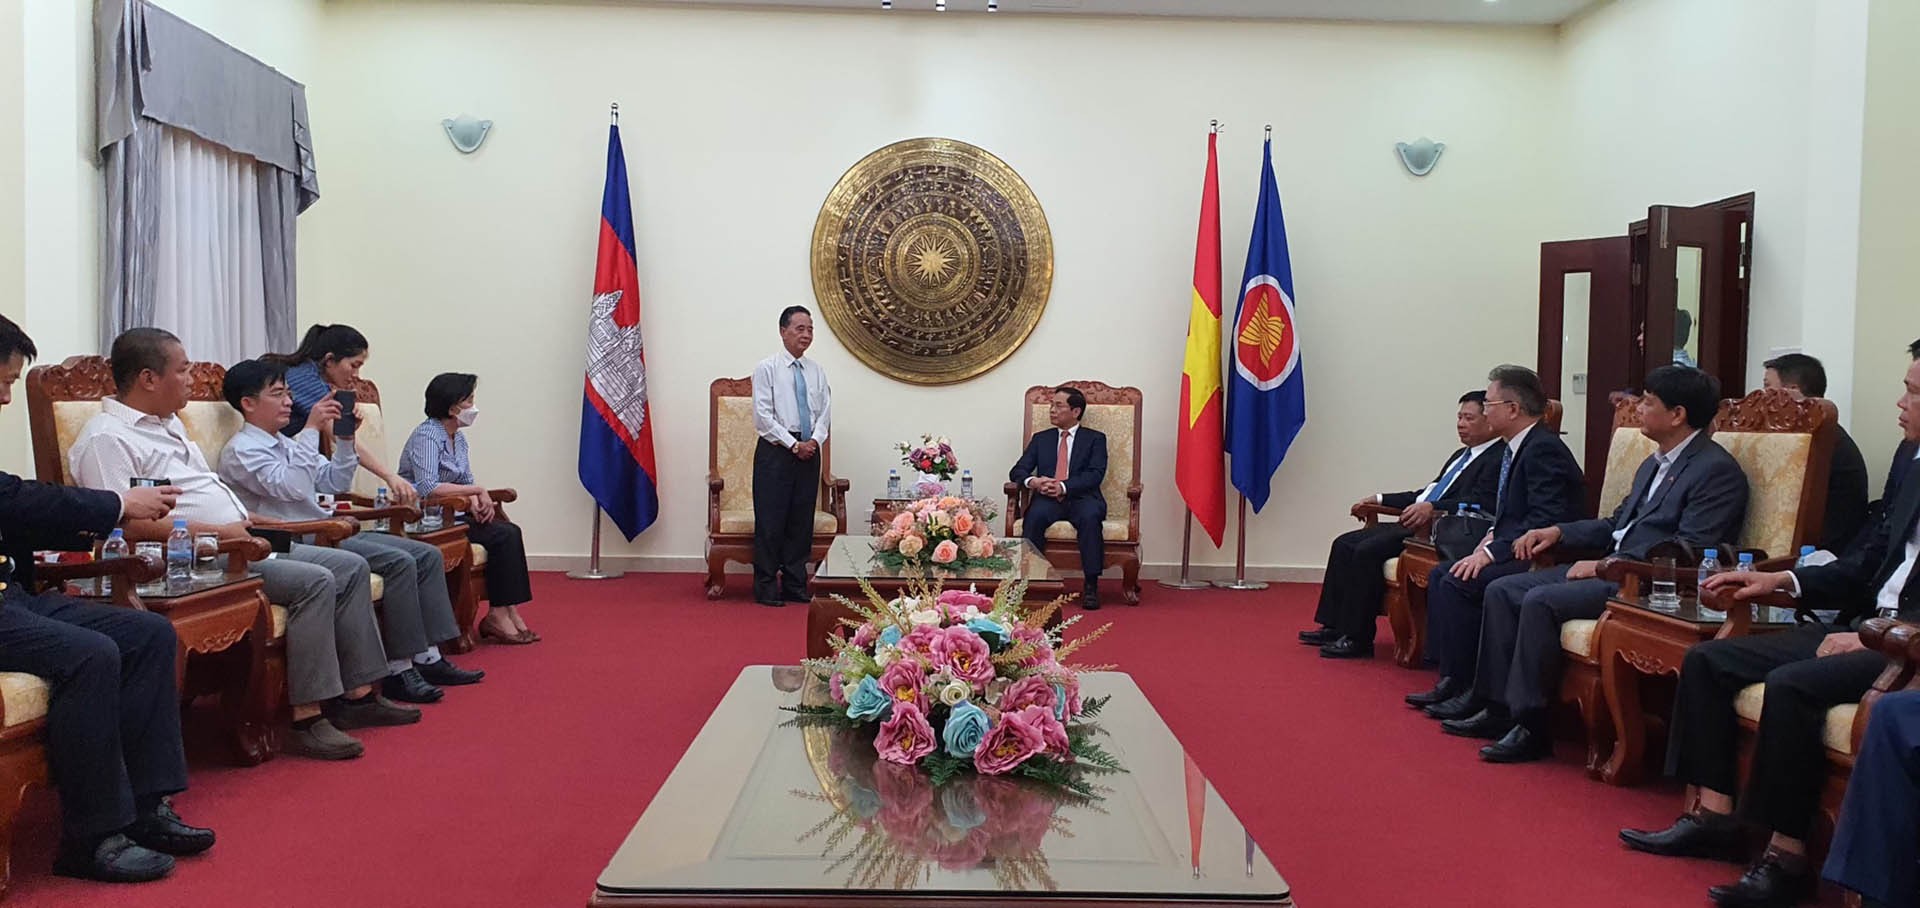 Bộ trưởng Ngoại giao Bùi Thanh Sơn trao quà Tết tặng bà con cộng đồng tại Campuchia gặp khó khăn do dịch Covid-19.